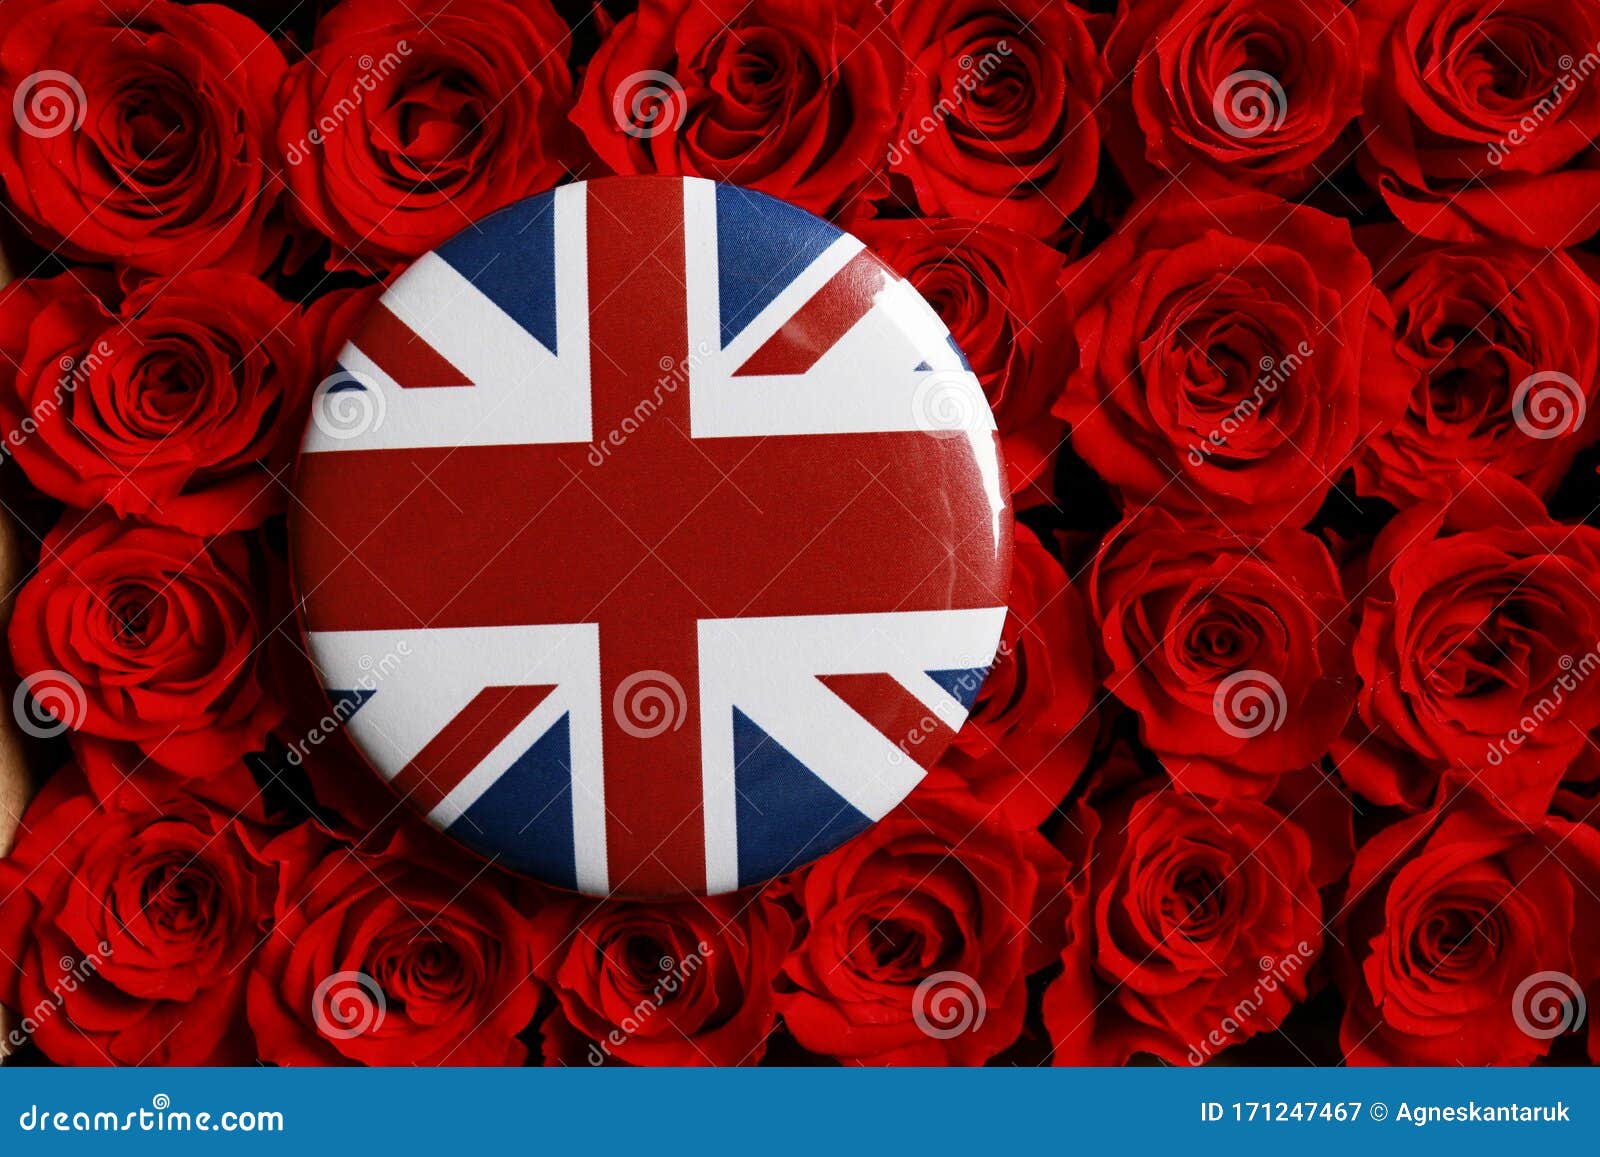 Từ xa xưa, Vương quốc Anh đã để lại dấu ấn trong trái tim của nhiều người. Cờ đỏ, trắng, xanh với hình chữ thập màu đỏ, còn gọi là cờ đồng minh lâu đời, đã trở thành ký hiệu và niềm tự hào của người Anh. Hãy xem hình ảnh liên quan để tìm hiểu thêm về cờ đồng minh lâu đời.